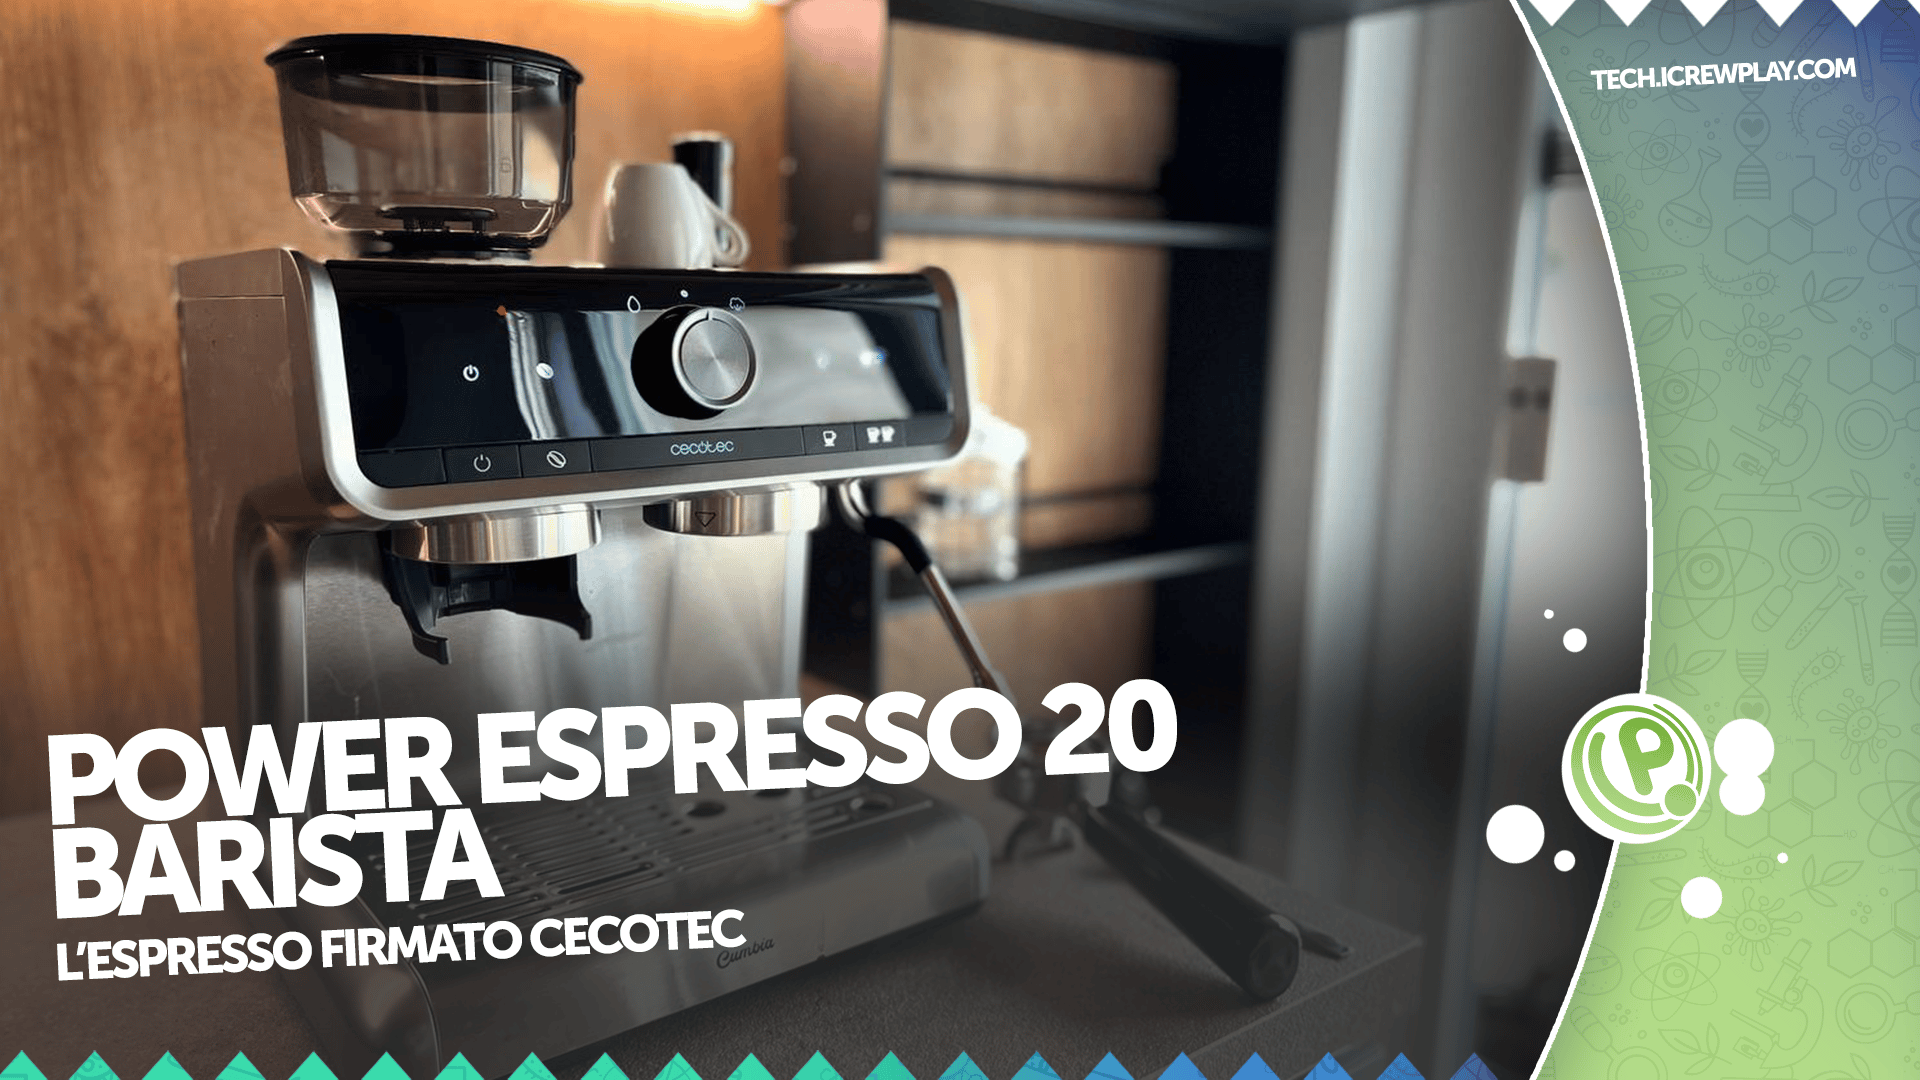 Cecotec - Cumbia Power Espresso 20 🙂 ➡